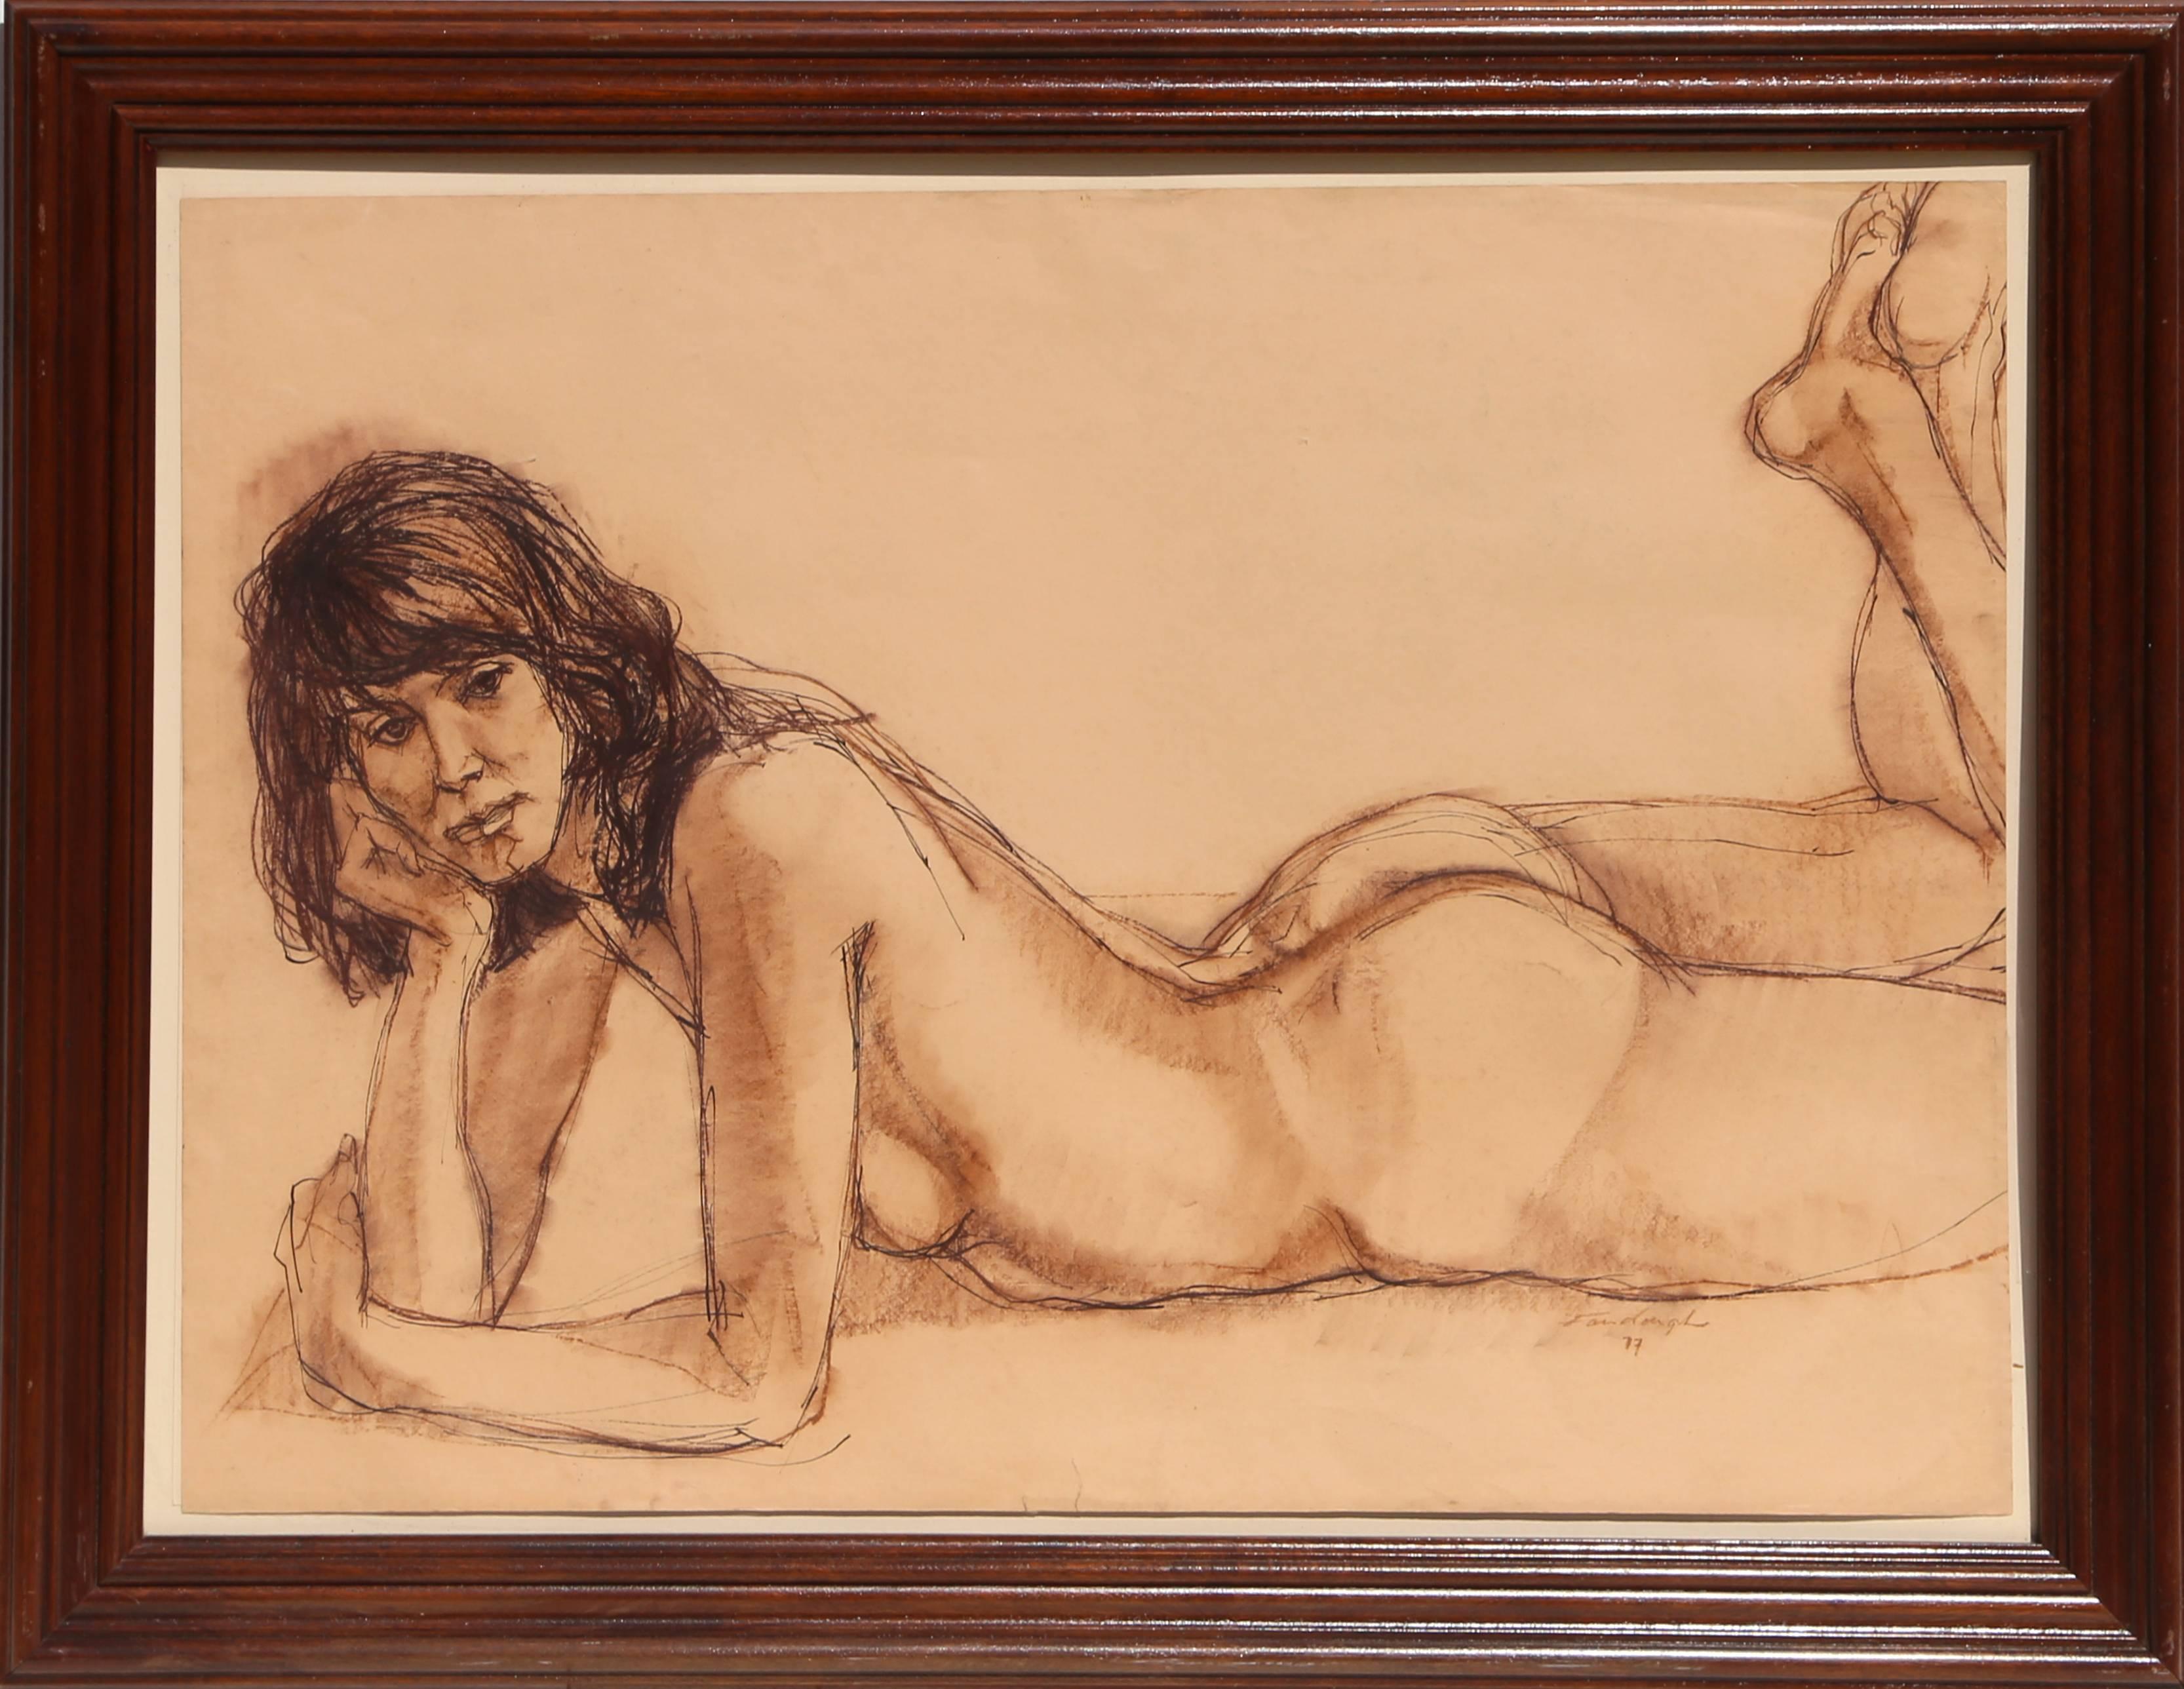 Künstler: Gerald Fairclough, Amerikaner (1946 -  )
Titel: Nackt
Jahr: 1977
Medium: Pastell-Zeichnung, signiert und datiert
Größe: 25 x 35 in. (63,5 x 88,9 cm)
Rahmengröße: 33 x 43 Zoll
